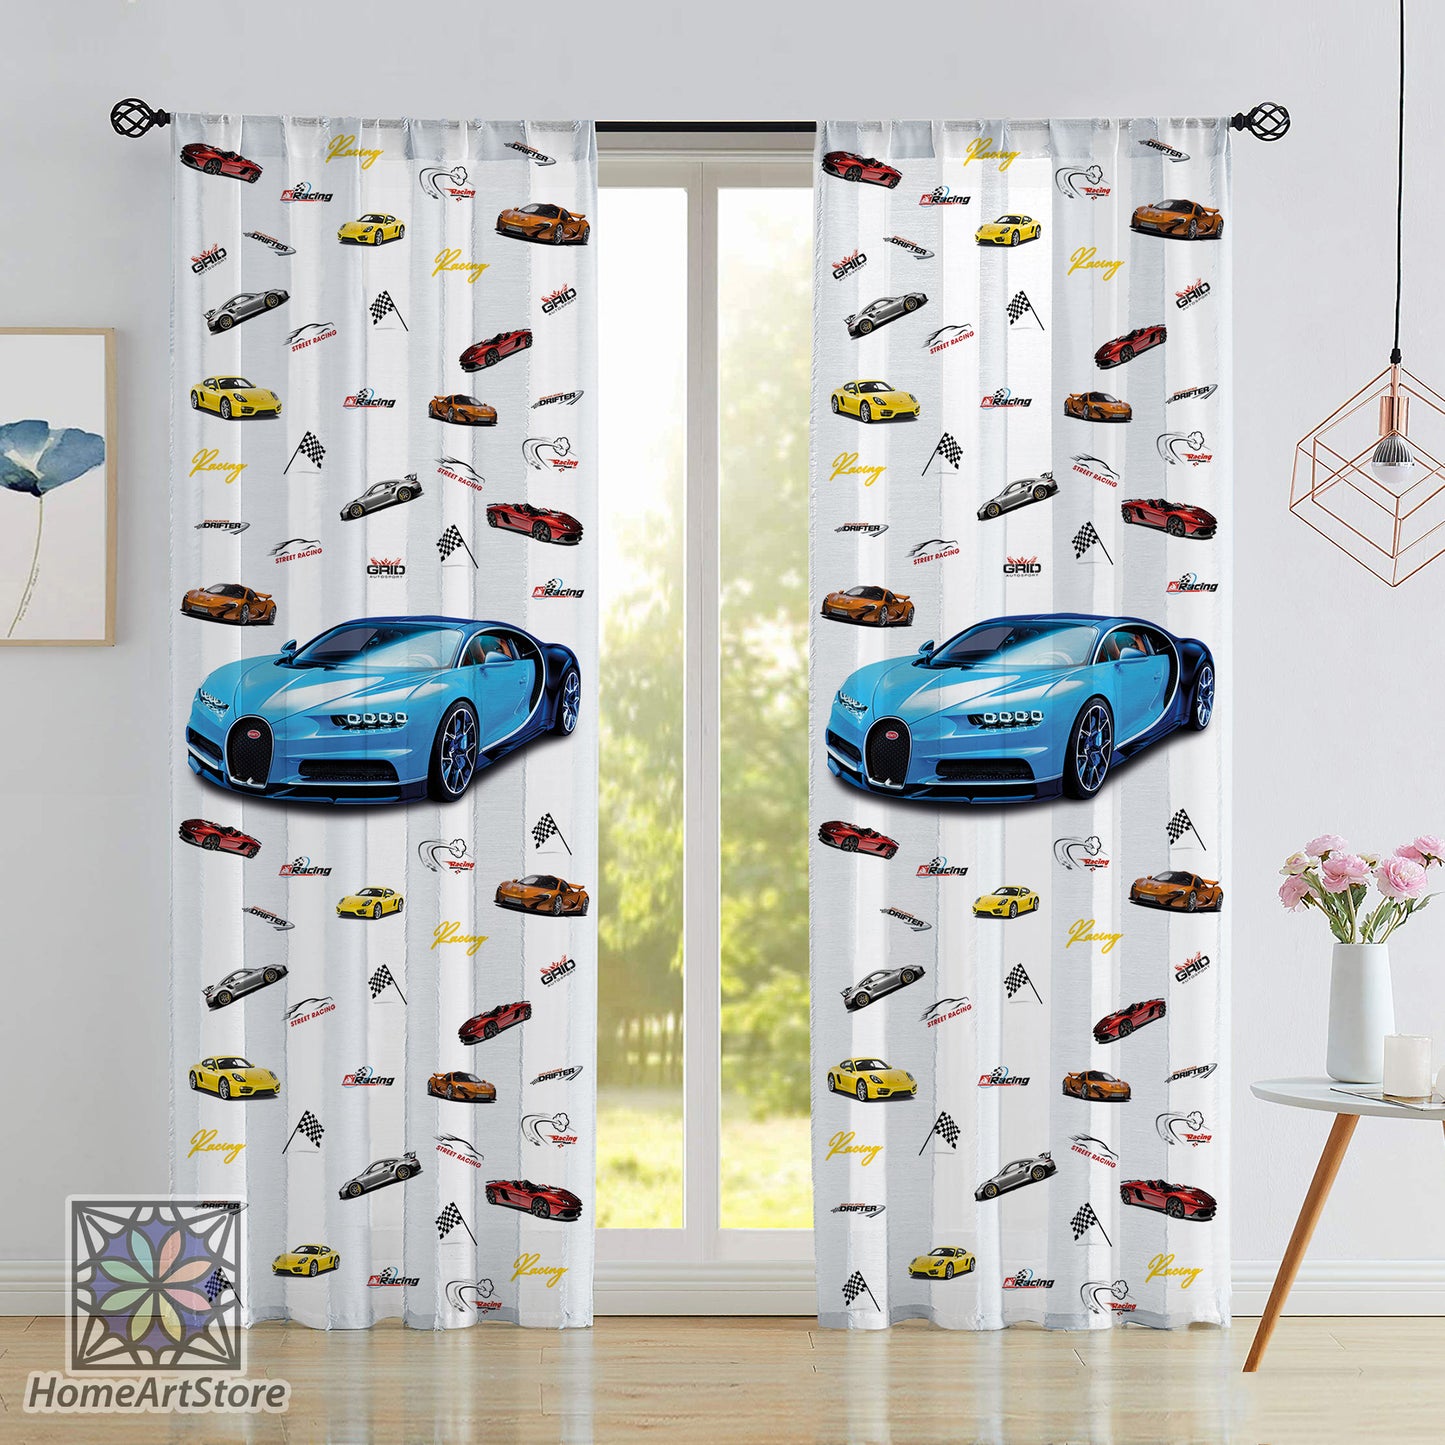 Blue Race Car Curtain, Car Patterned Curtain, Baby Boys Room Decor, Nursey Curtain, Baby Shower Curtain